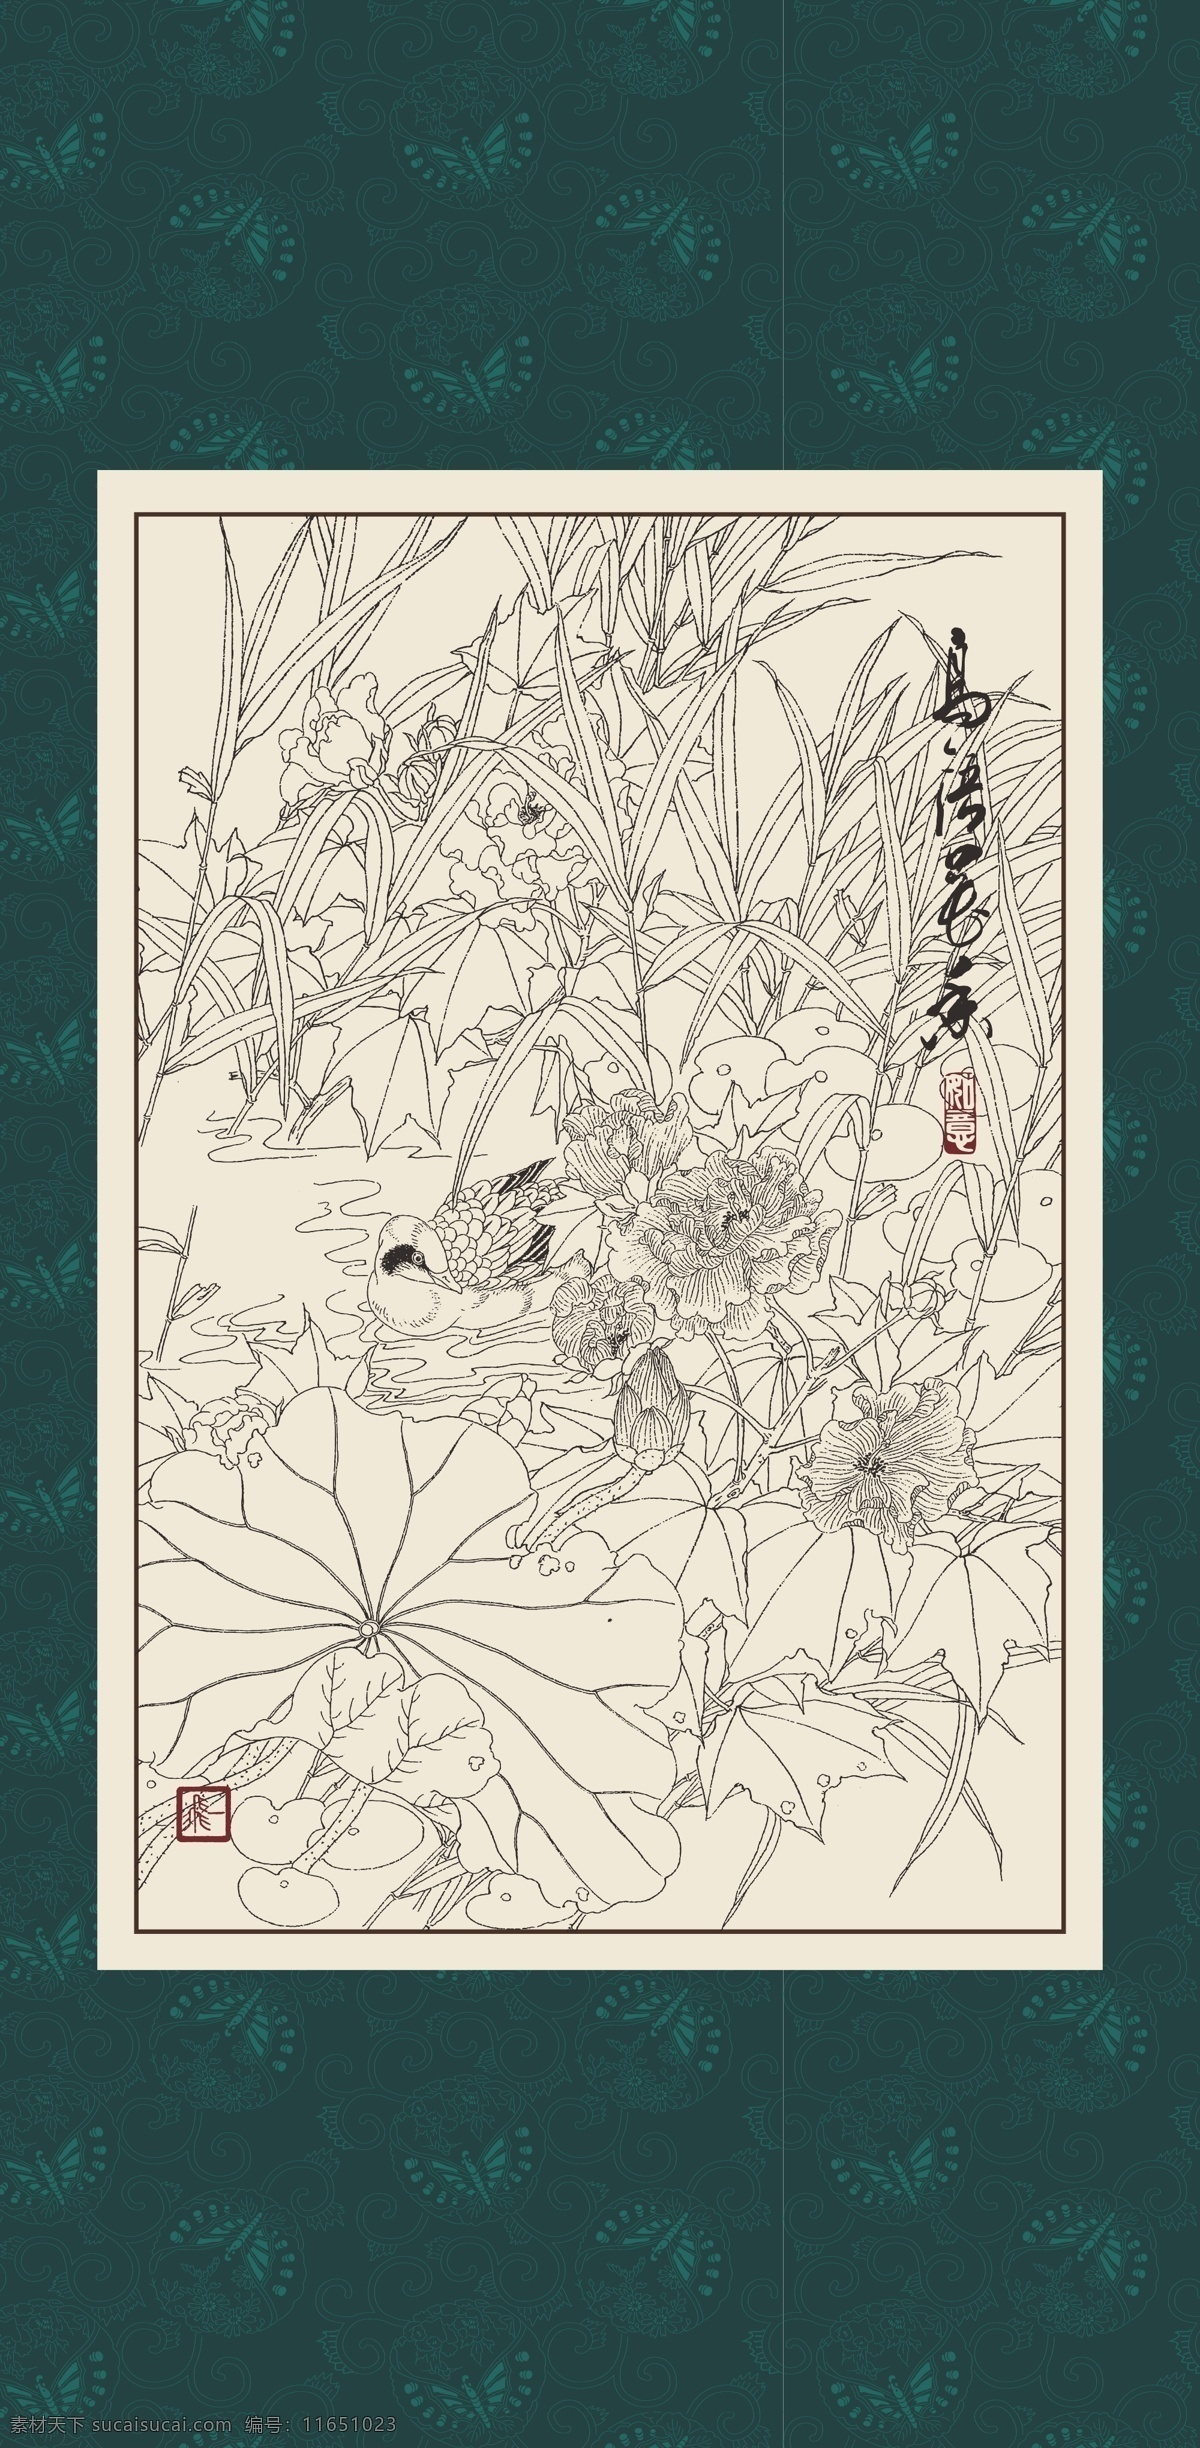 白描 线描 绘画 手绘 国画 印章 植物 花卉 工笔 gx150018 白描芙蓉 文化艺术 绘画书法